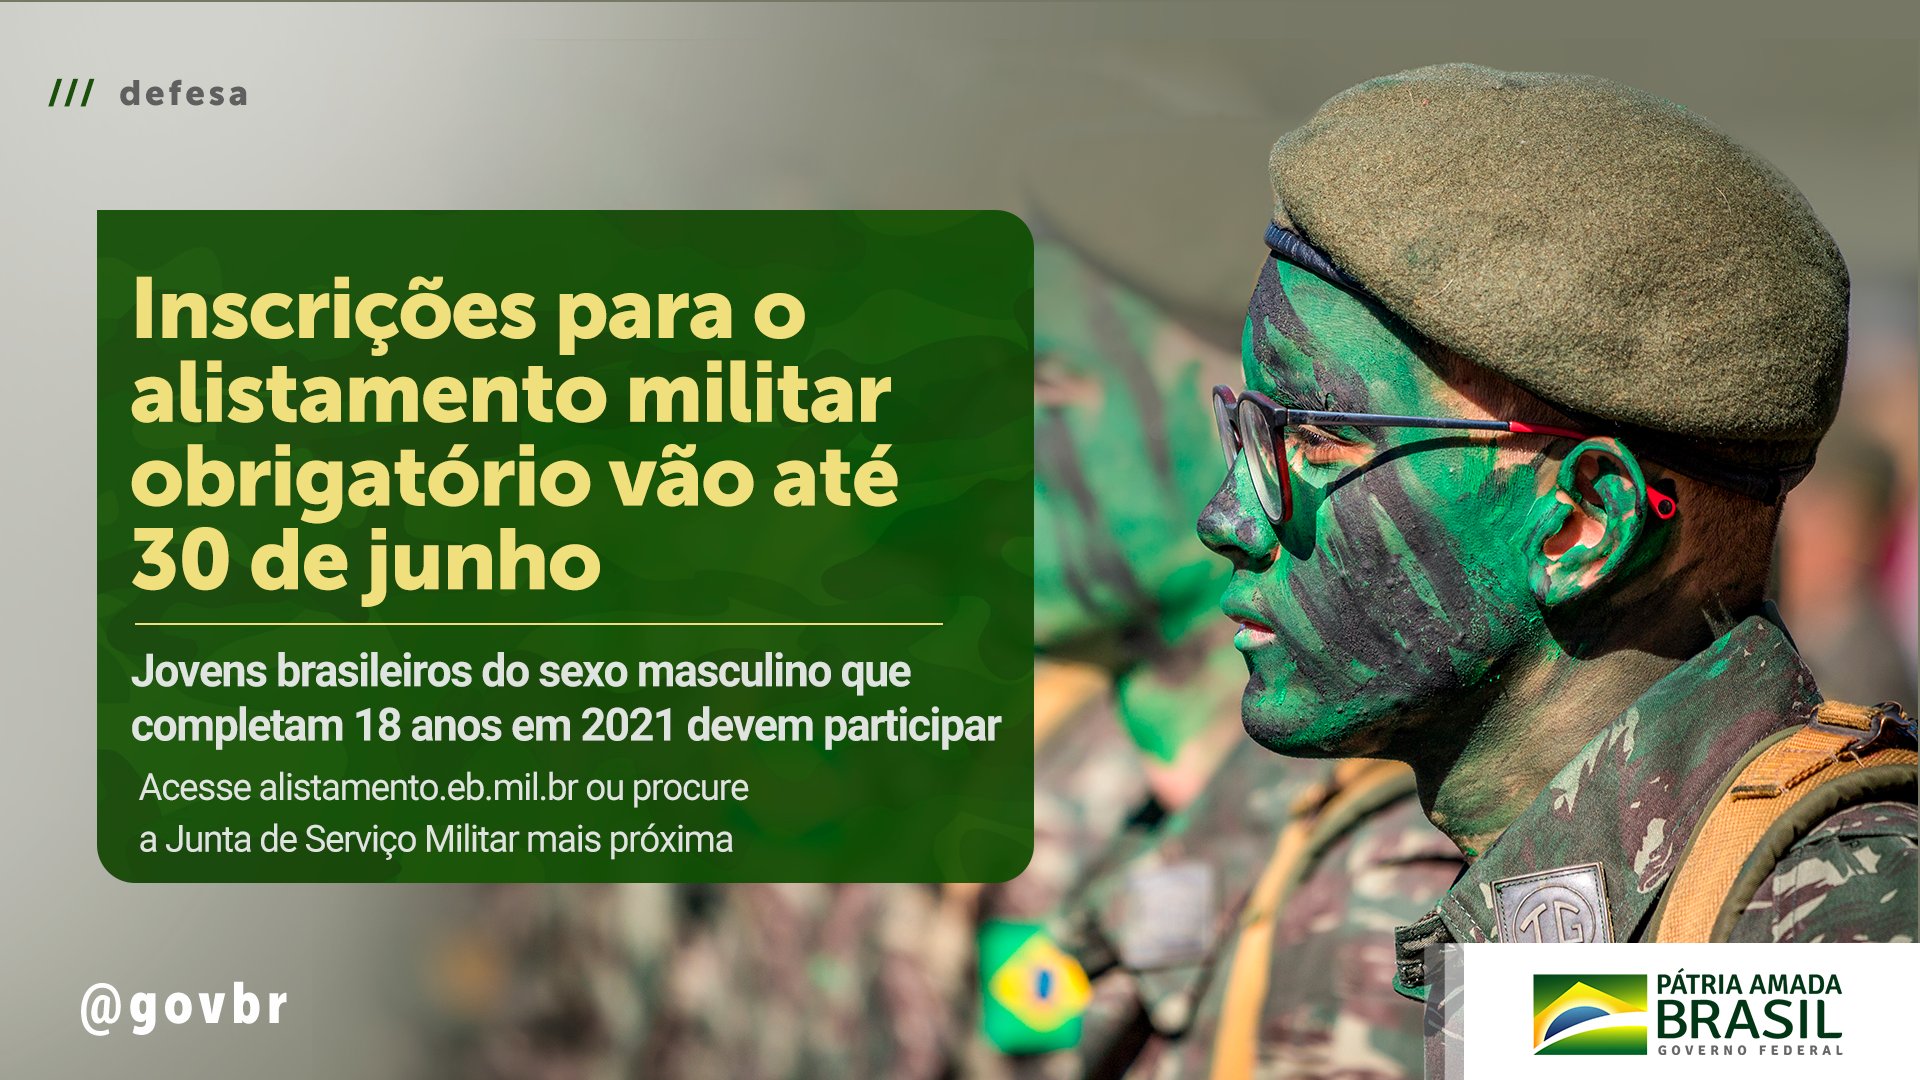 Exército Brasileiro 🇧🇷 on X: Se você é do sexo masculino e completa 18  anos em 2022, você deve se alistar para o serviço militar até 30 de junho.  ATENÇÃO: não é